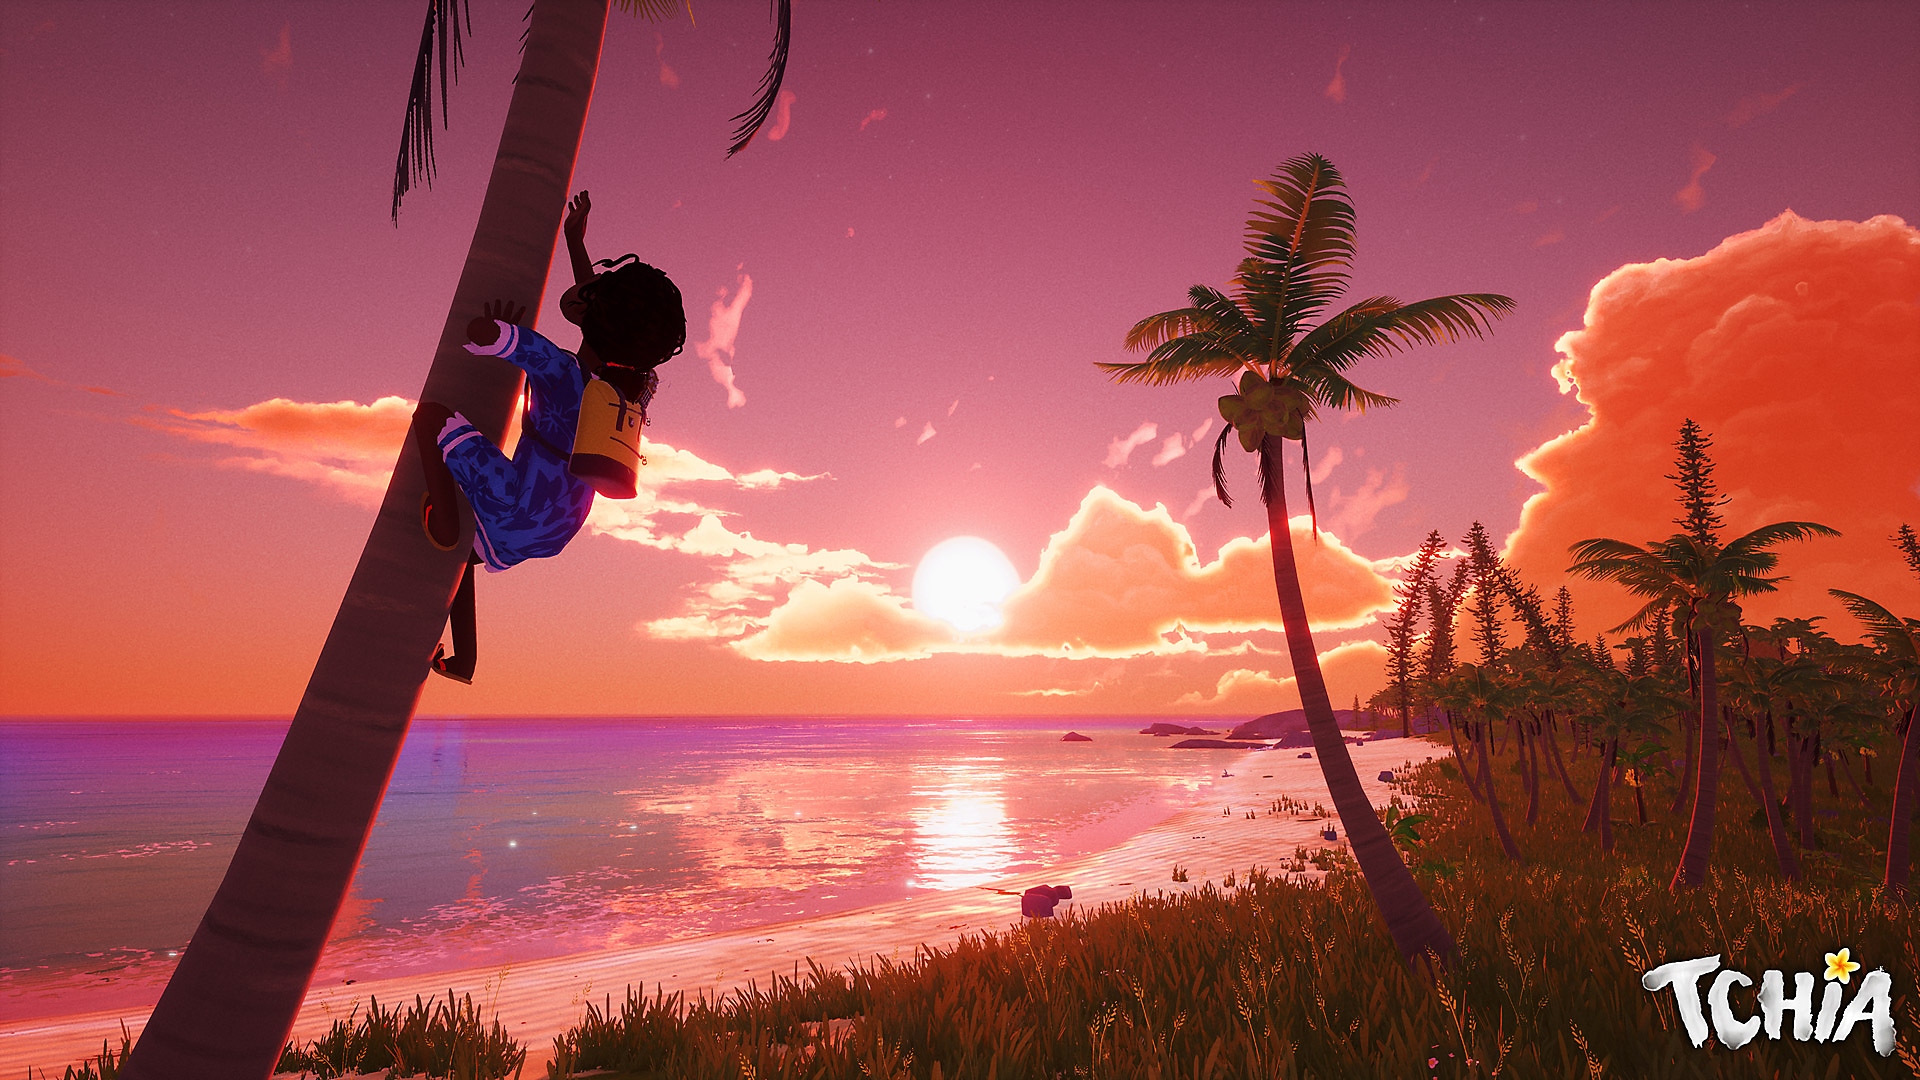 Snimka zaslona iz igre Tchia prikazuje glavnu junakinju kako se penje na drvo uz prekrasan zalazak sunca u daljini